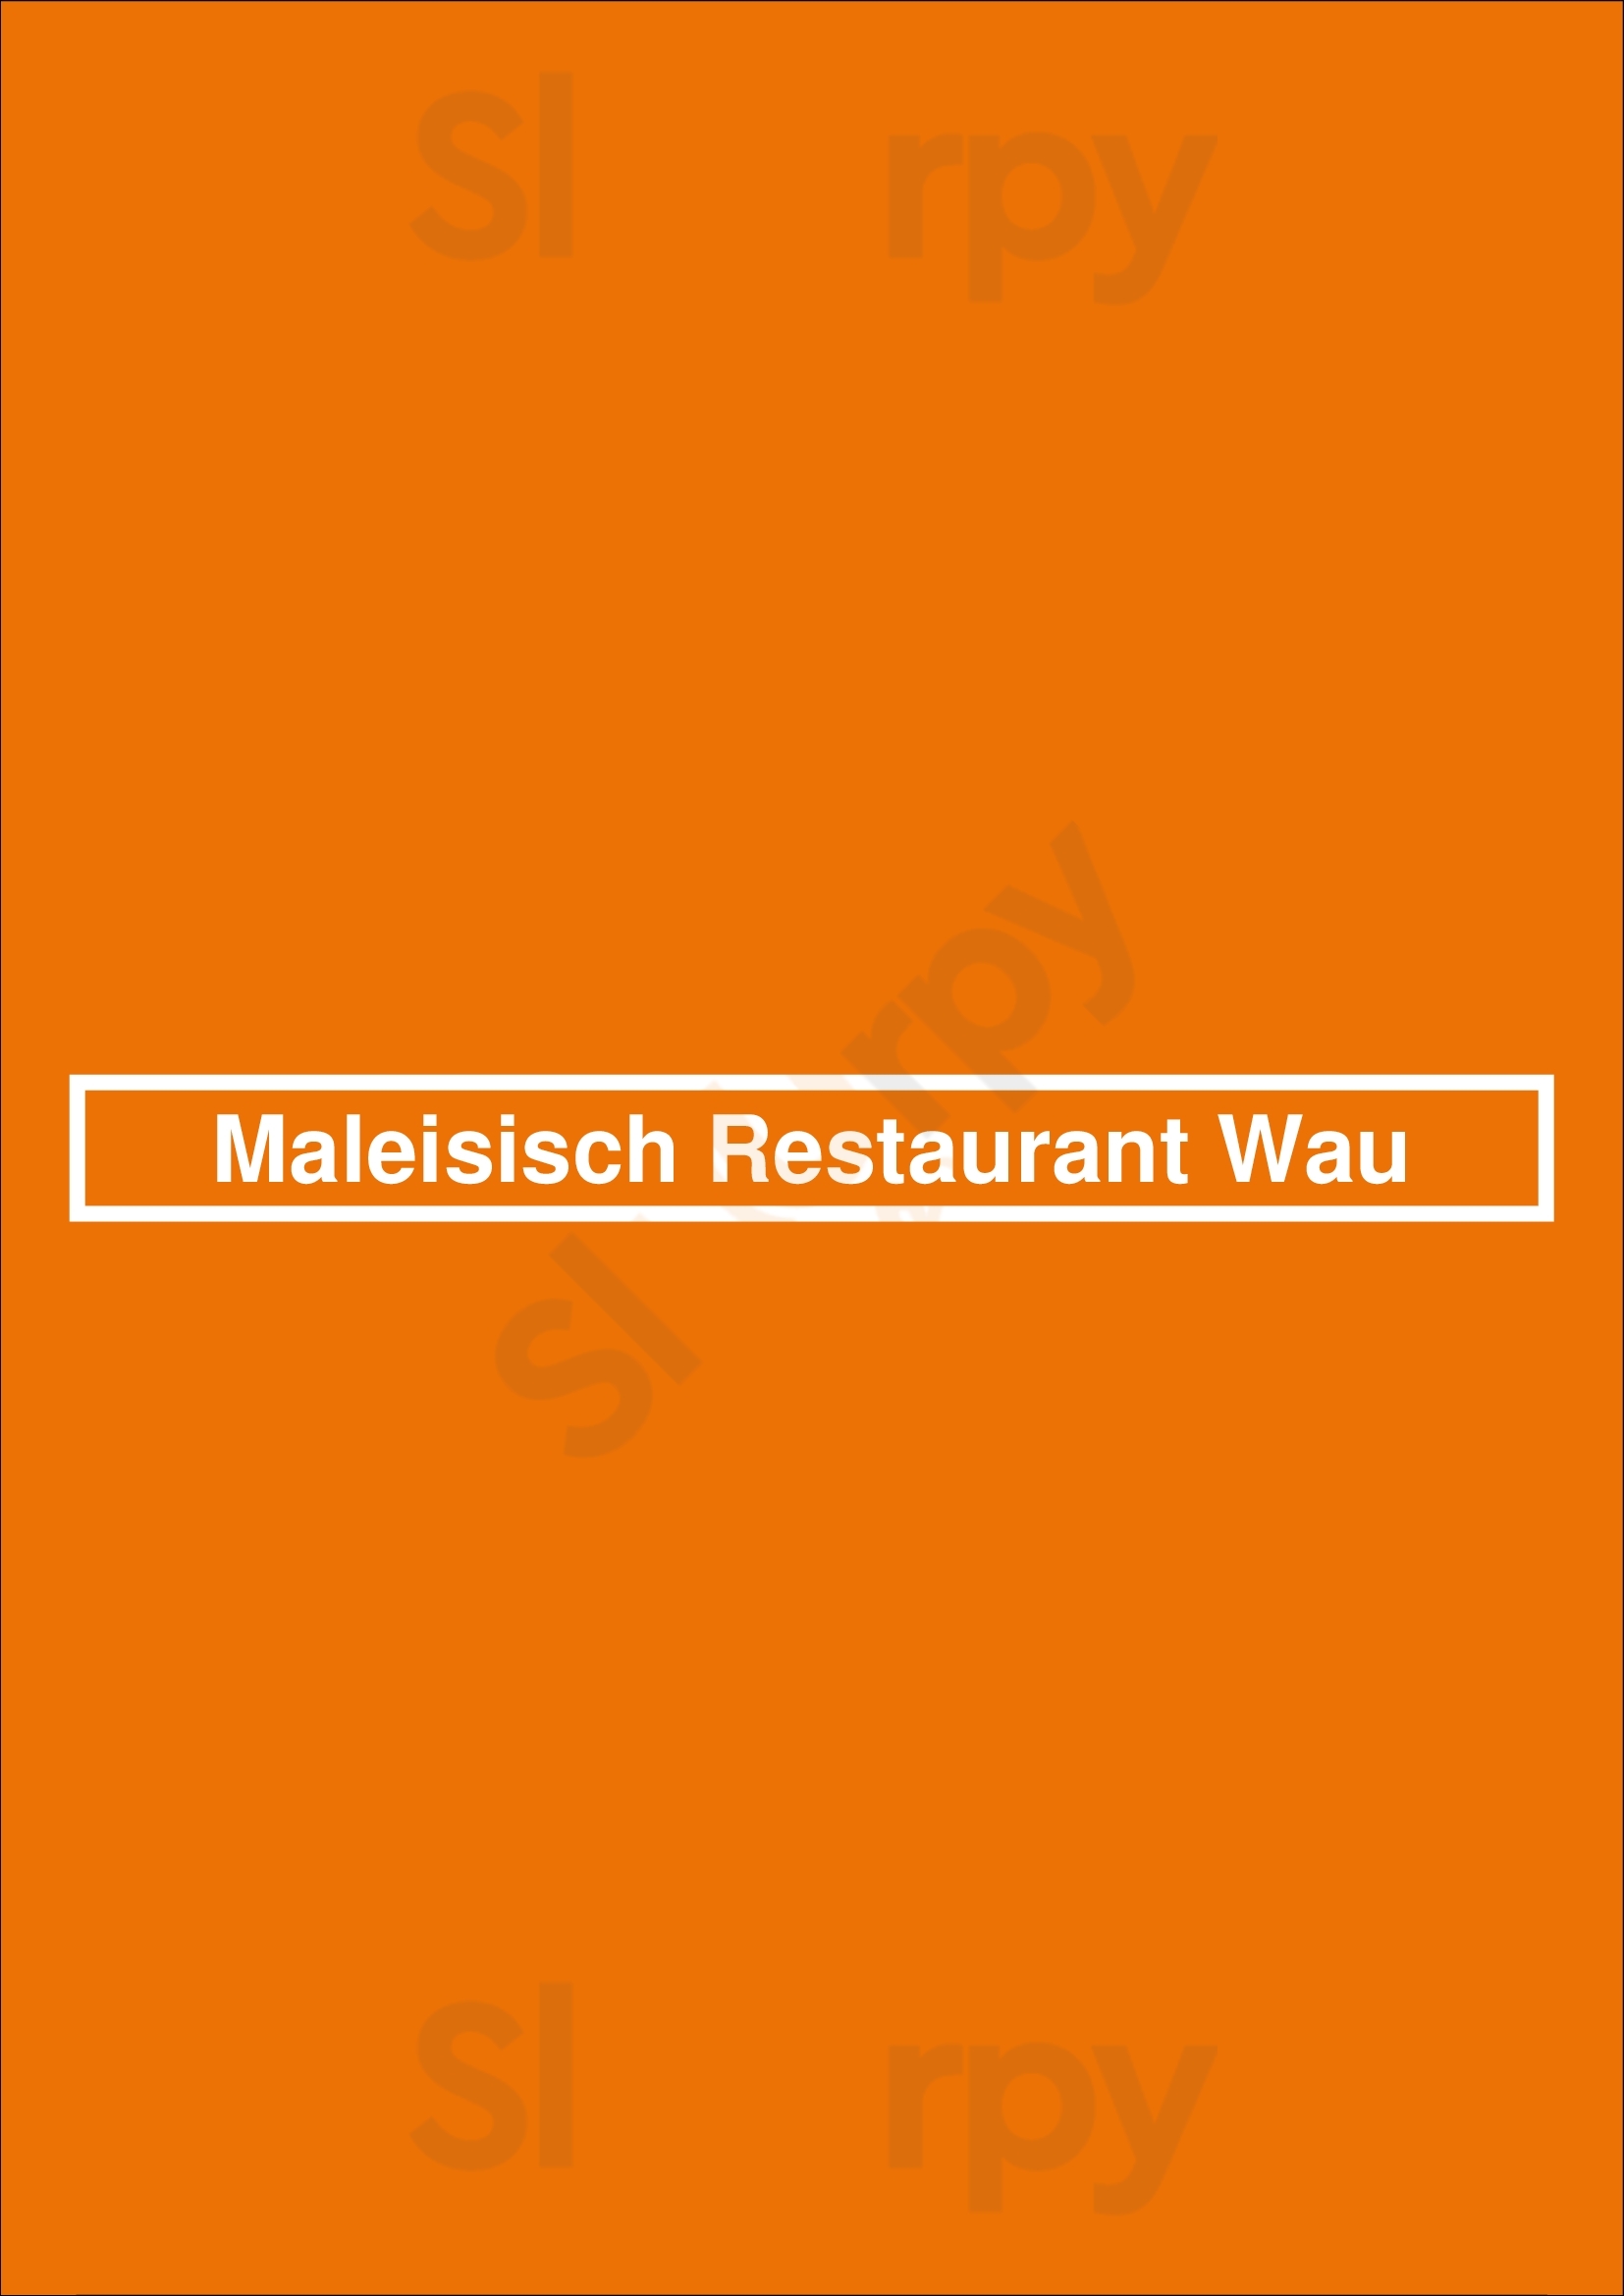 Maleisisch Restaurant Wau Amsterdam Menu - 1